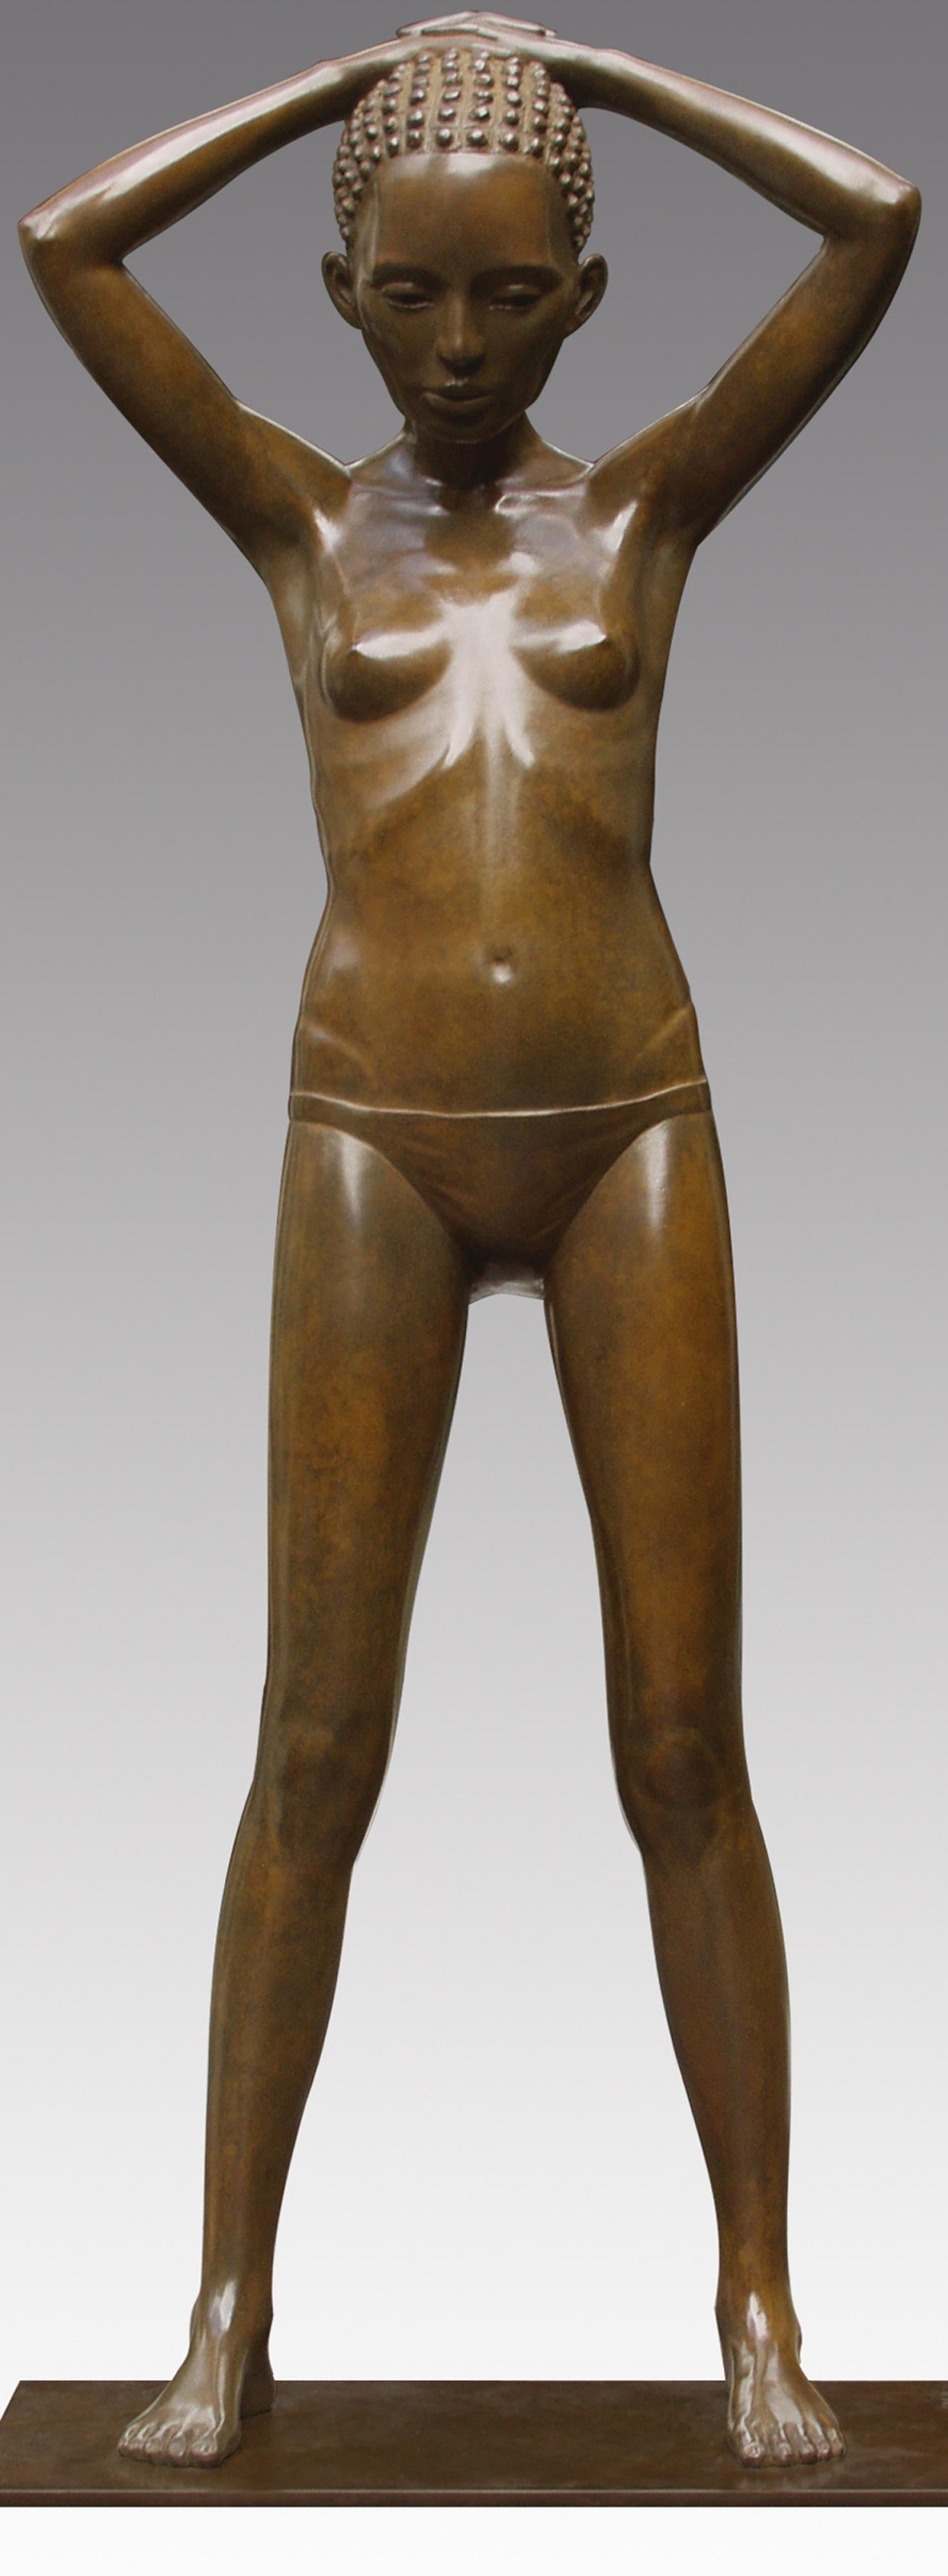 Modell II Bronze-Skulptur Nacktes Mädchen stehende weibliche Figur Zeitgenössisch (Gold), Figurative Sculpture, von Erwin Meijer